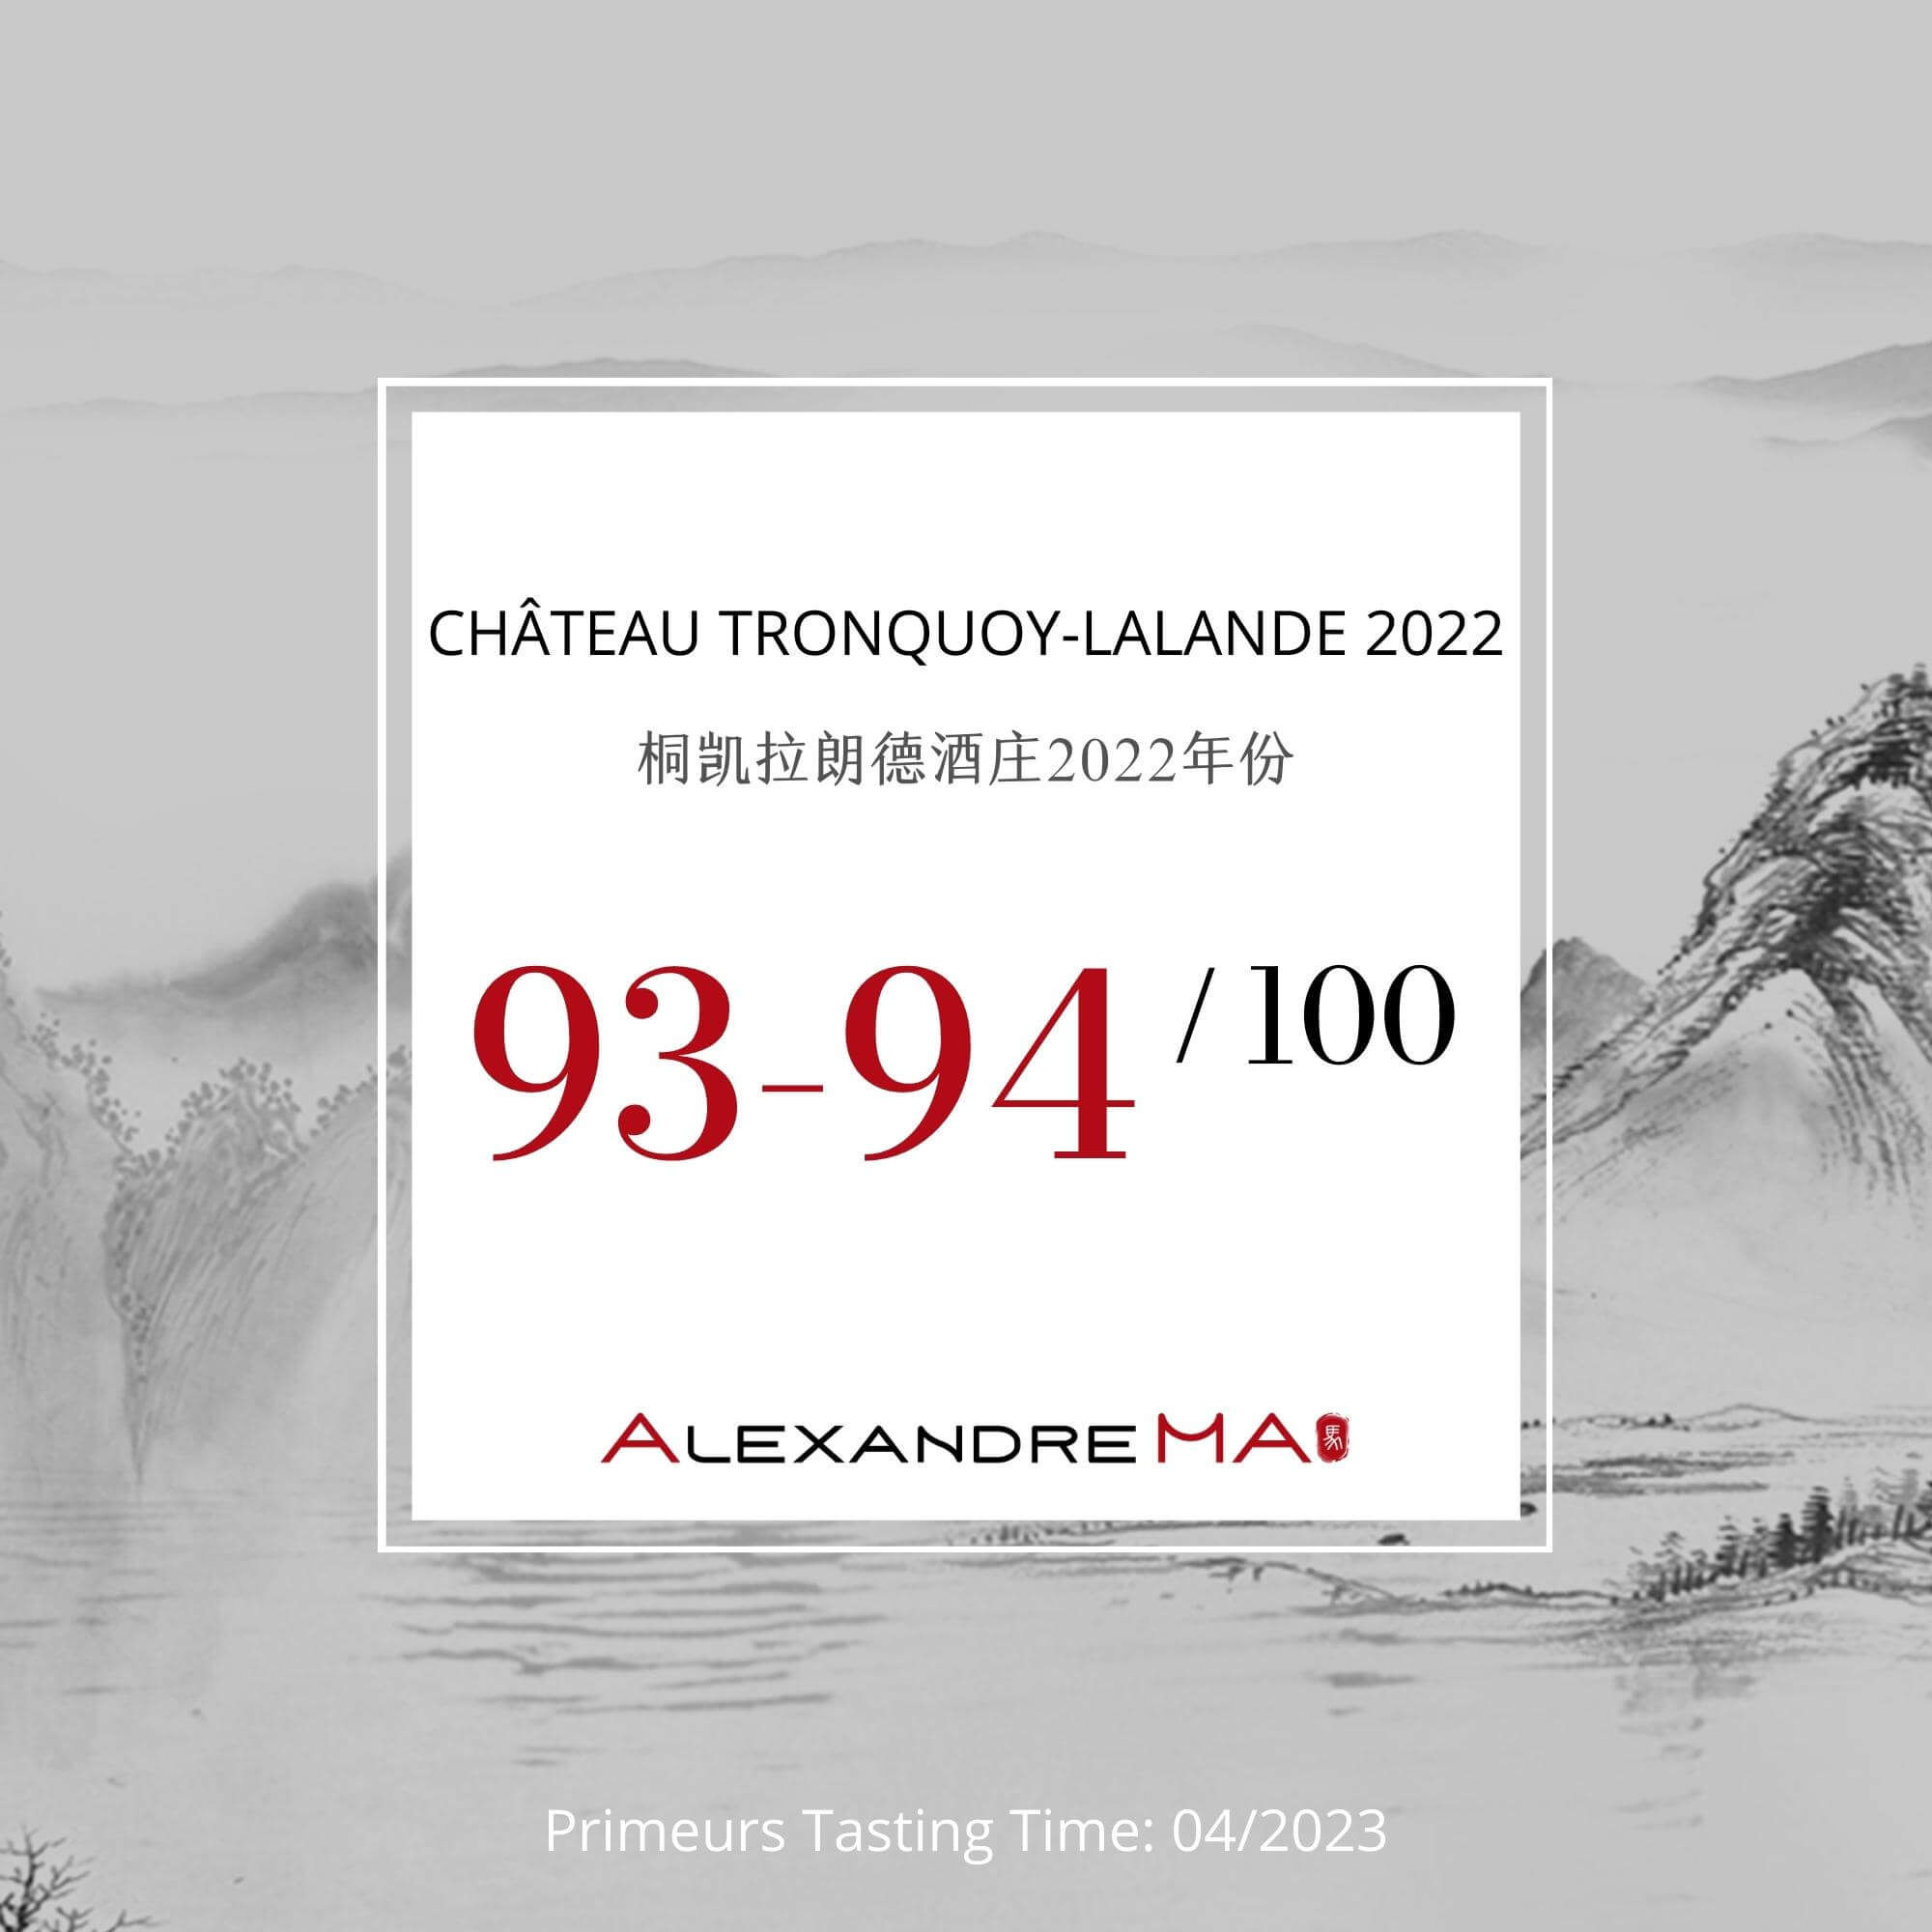 Château Tronquoy-Lalande 2022 Primeurs - Alexandre MA